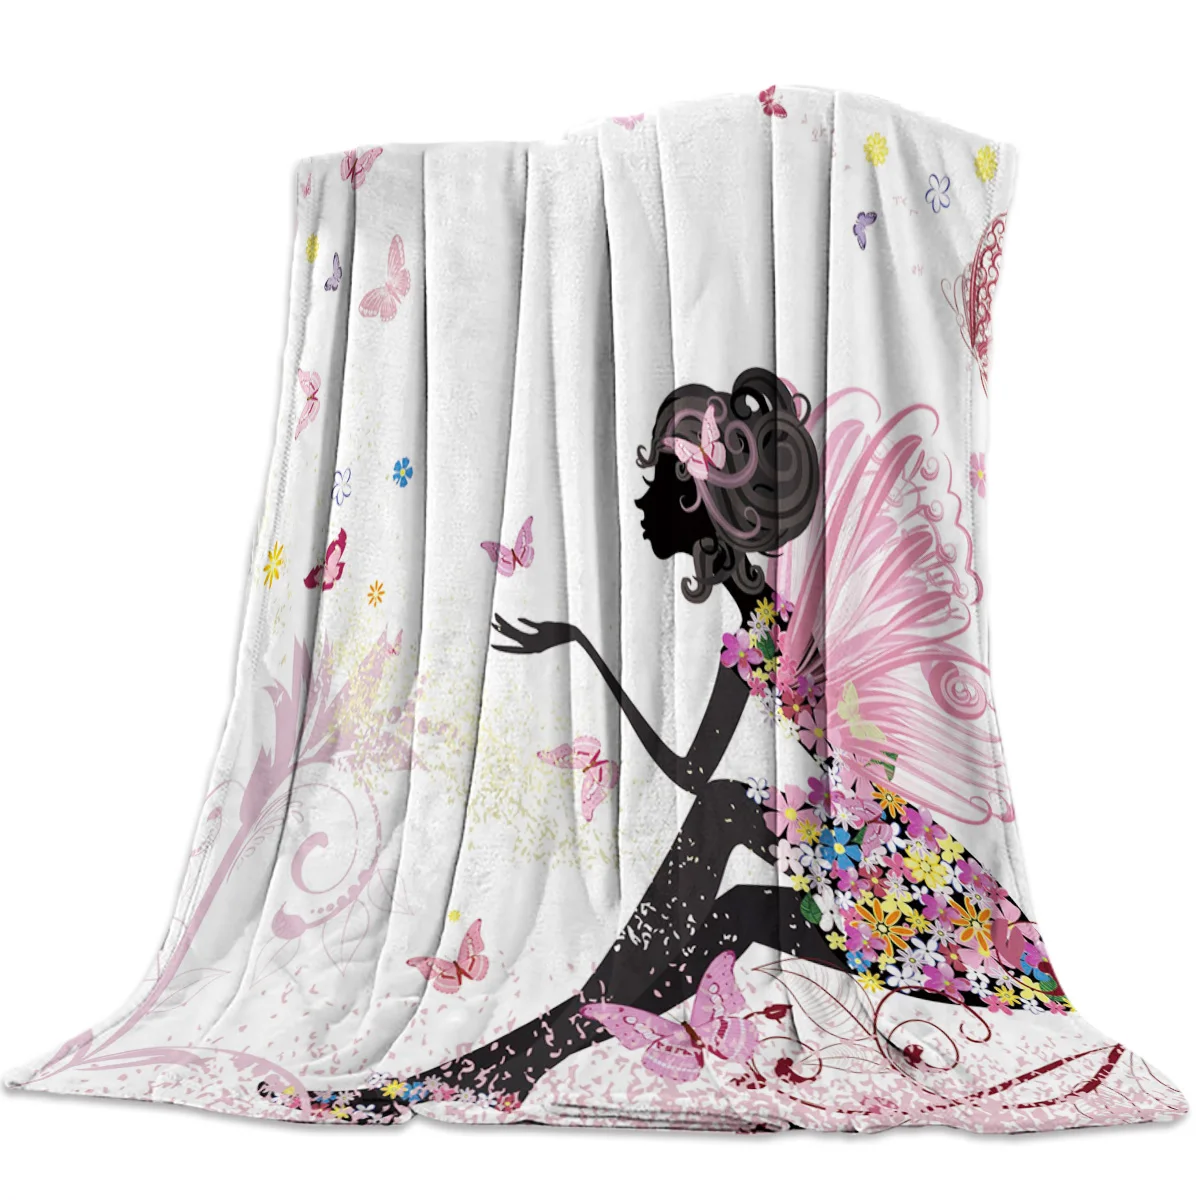 

Фланелевое Одеяло с изображением Феи цветов для девочек, супермягкое, уютное, легкое, теплое, для дивана, кровати, путешествий, кемпинга, подарок для девочек